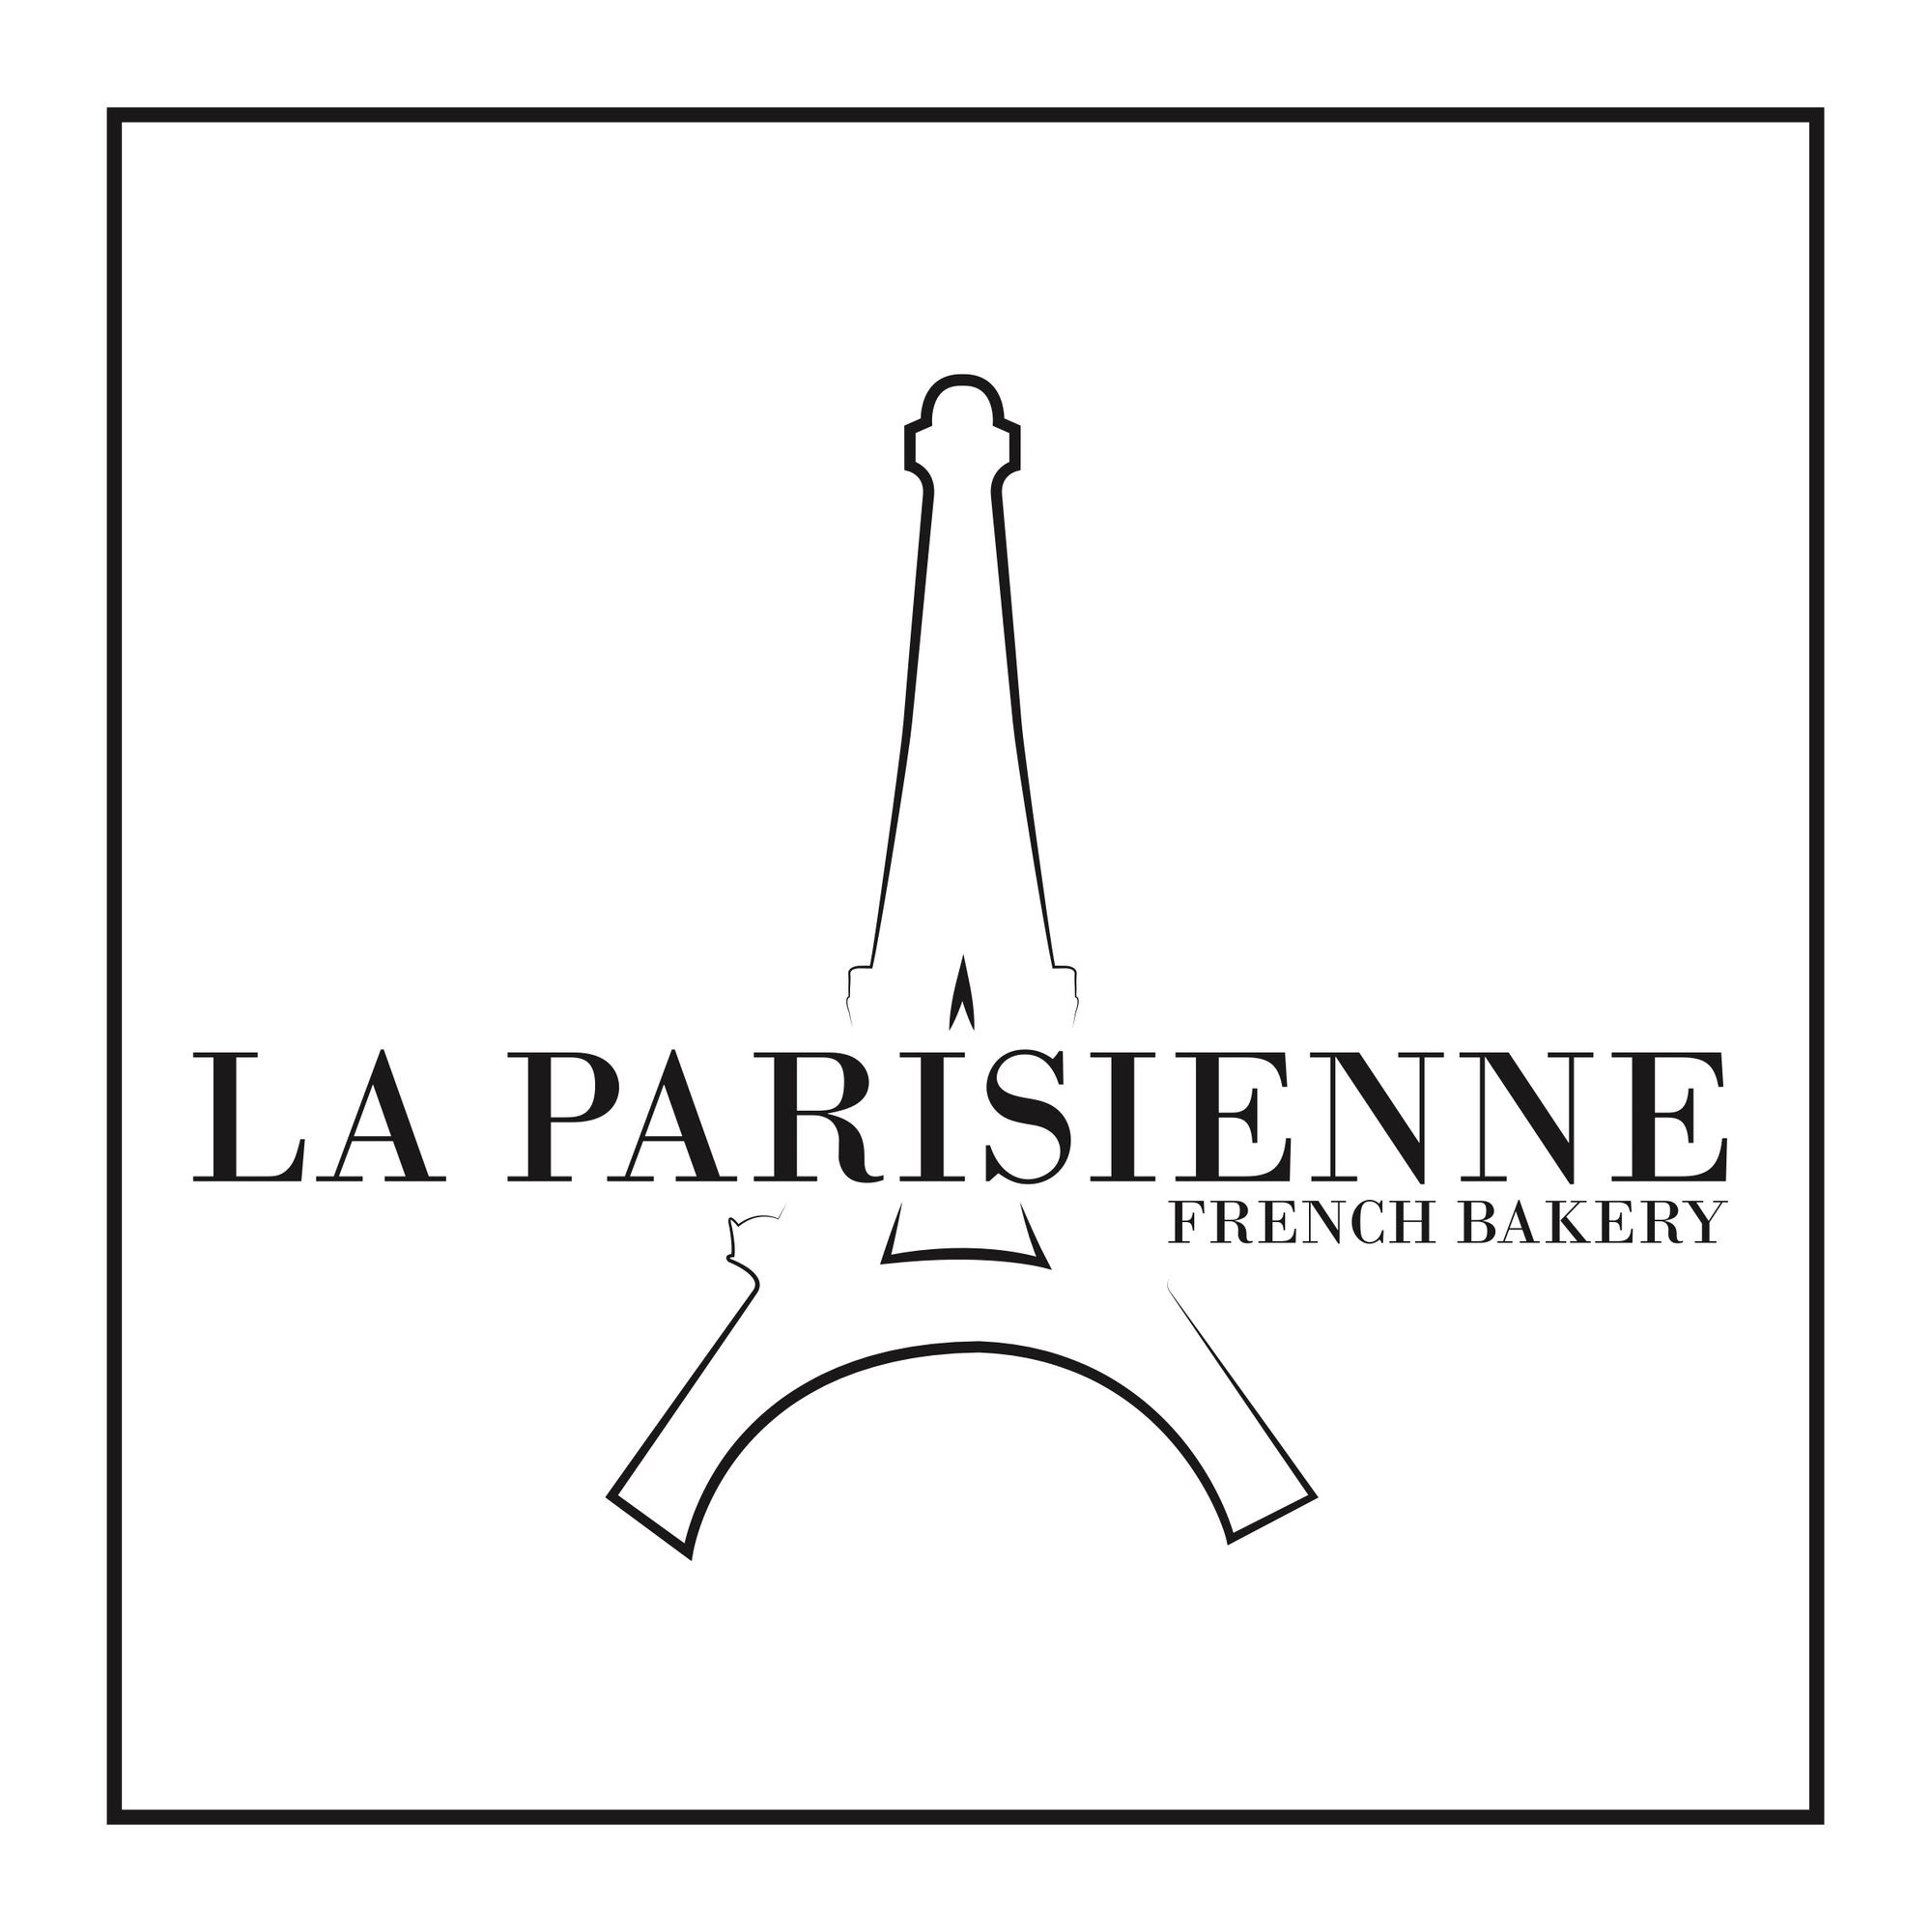 A Little Taste of France - La Parisienne